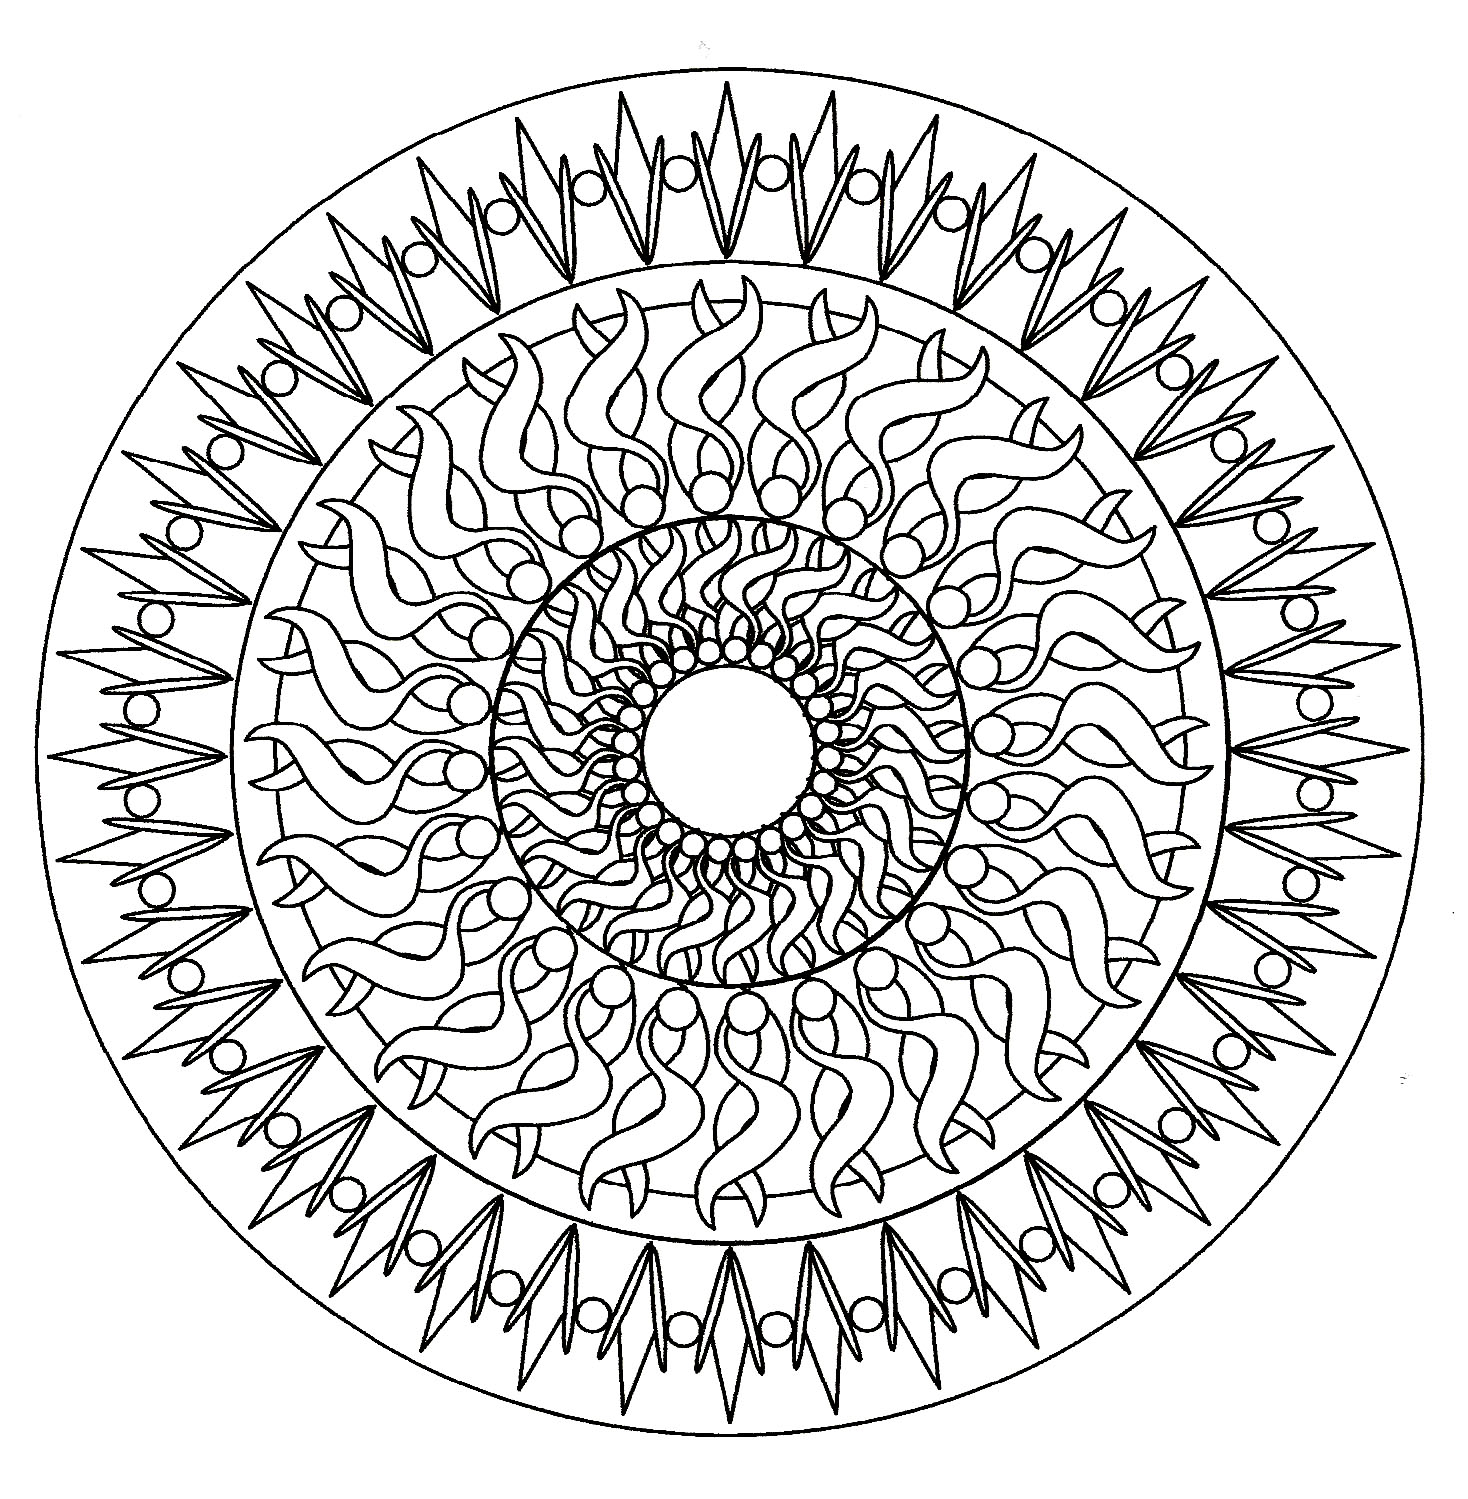 Ein hypnotisches Mandala mit 'normalem' Schwierigkeitsgrad, das für Kinder und Erwachsene geeignet ist, die Ausmalbilder wünschen, die weder zu einfach noch zu schwierig sind.